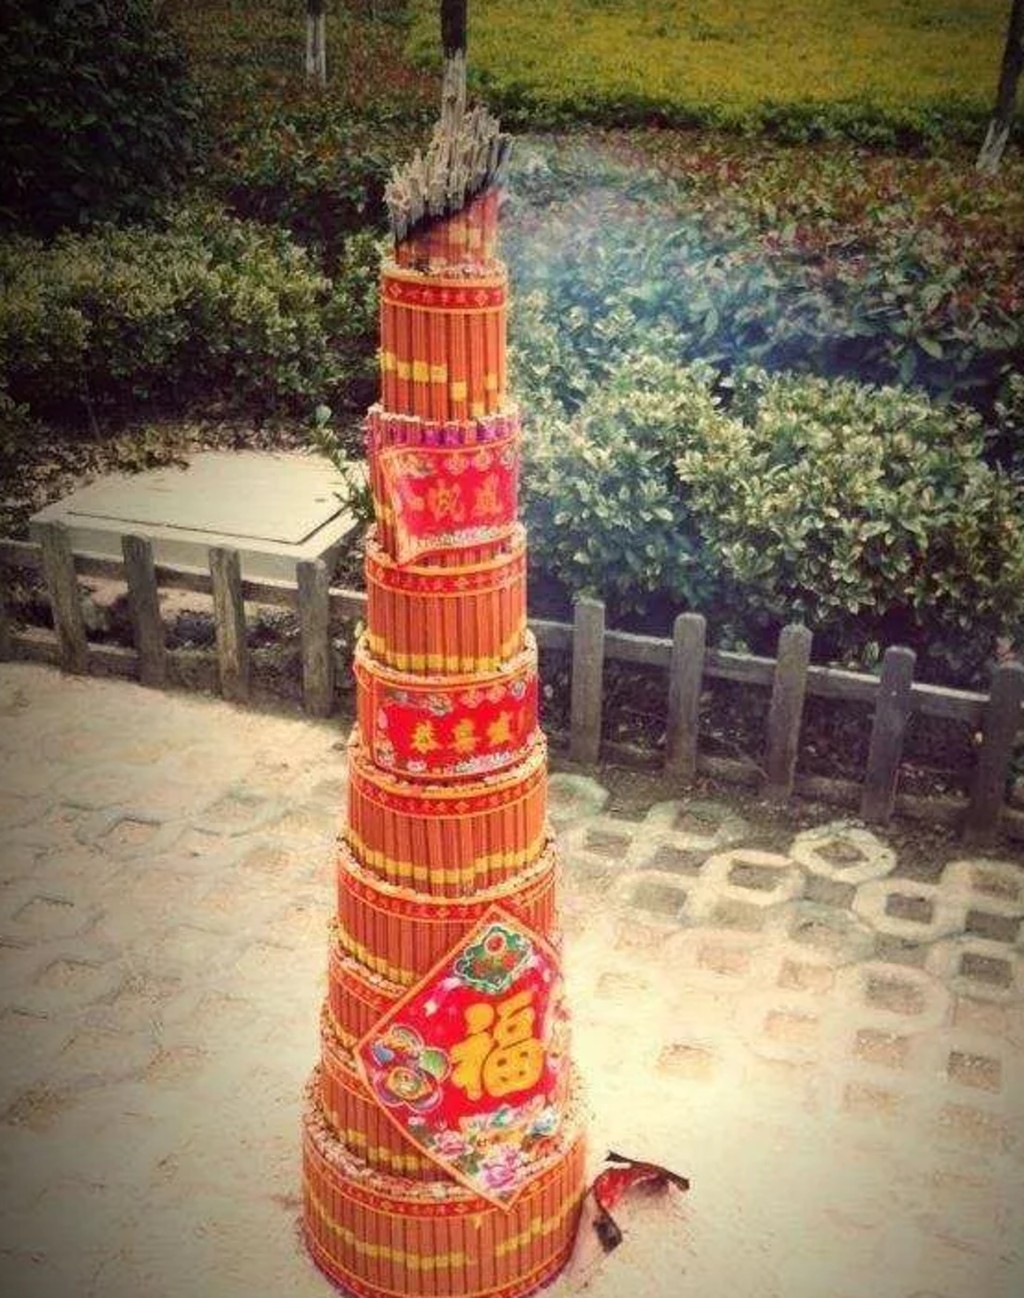 燃斗香拜神是江苏的民间习俗。